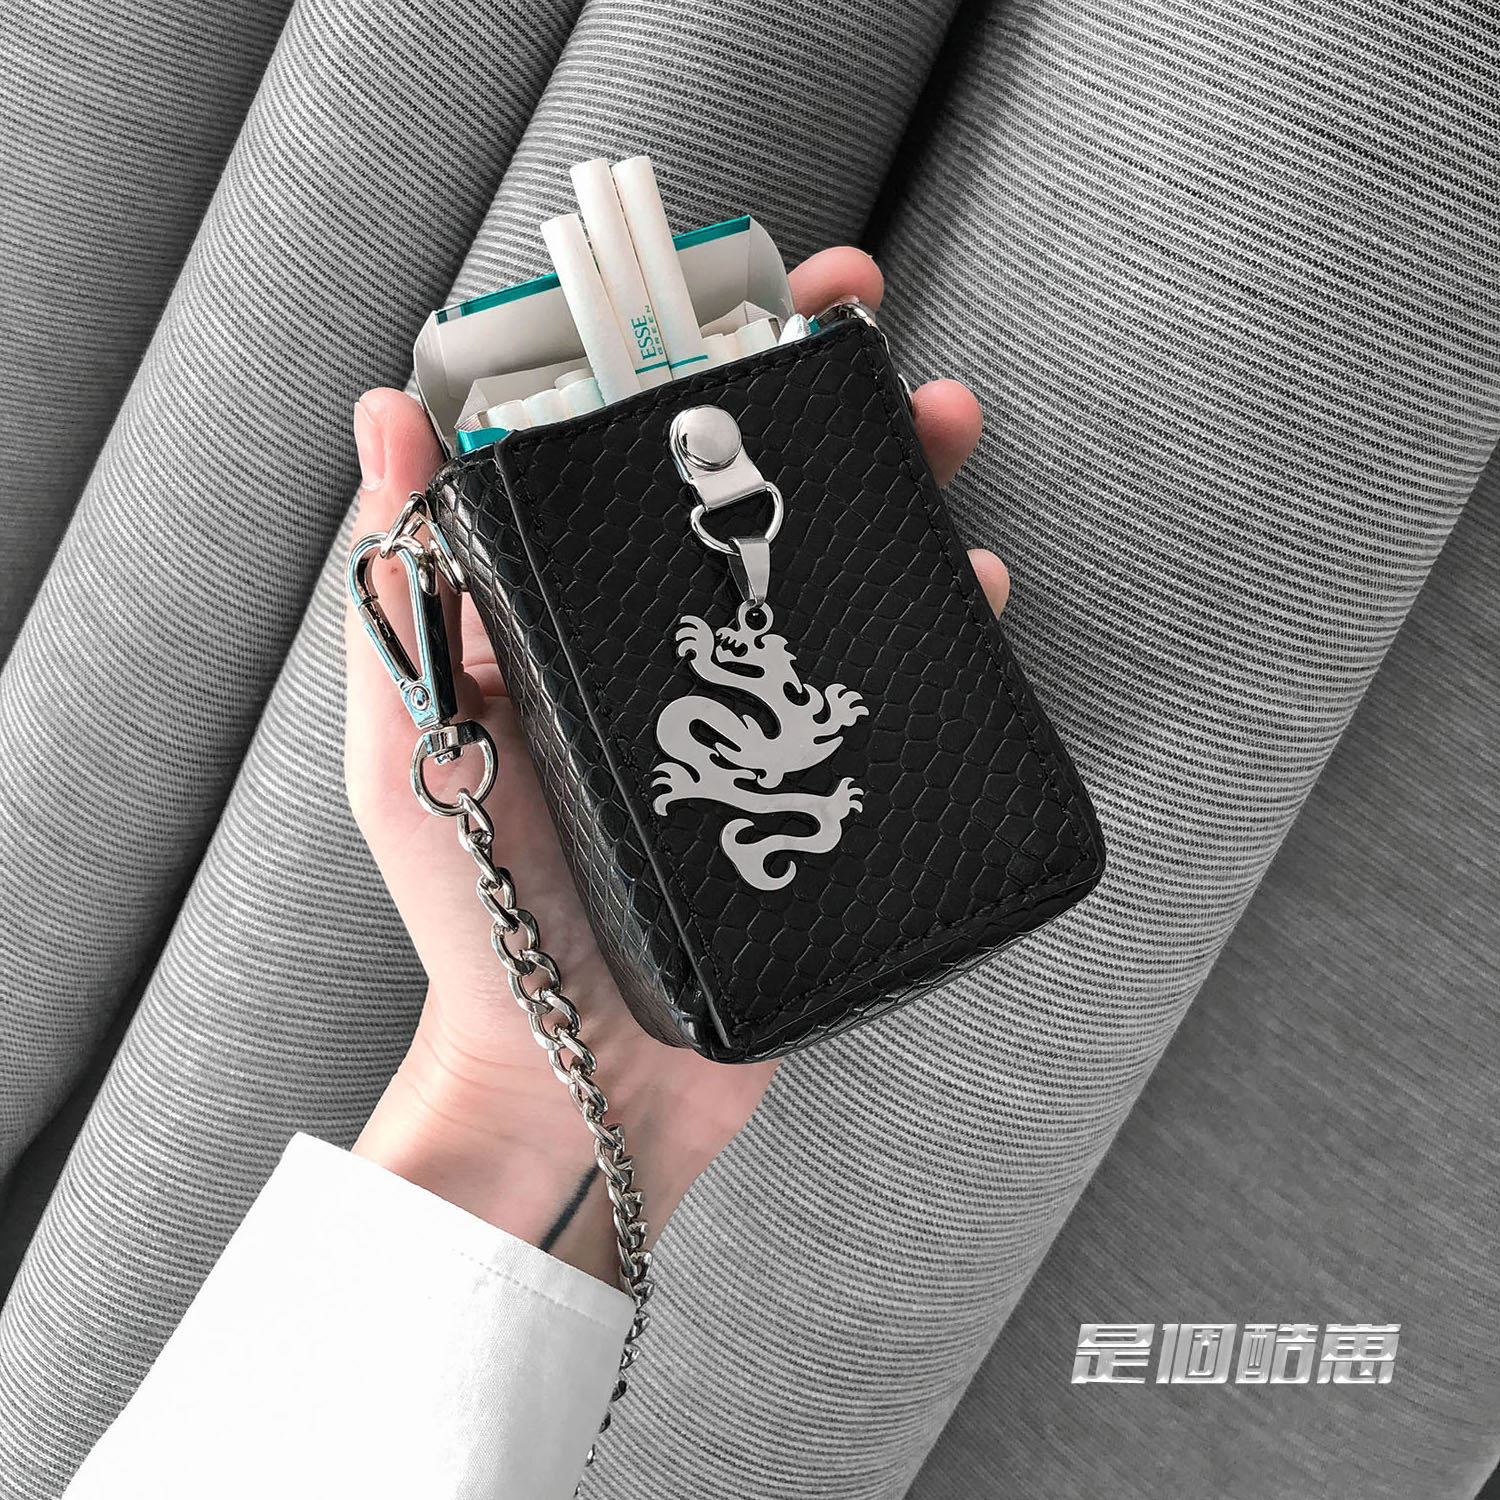 小雨萌酷自制Mini烟盒包装饰包蛇纹黑色小包包链条摇滚朋克包挂链